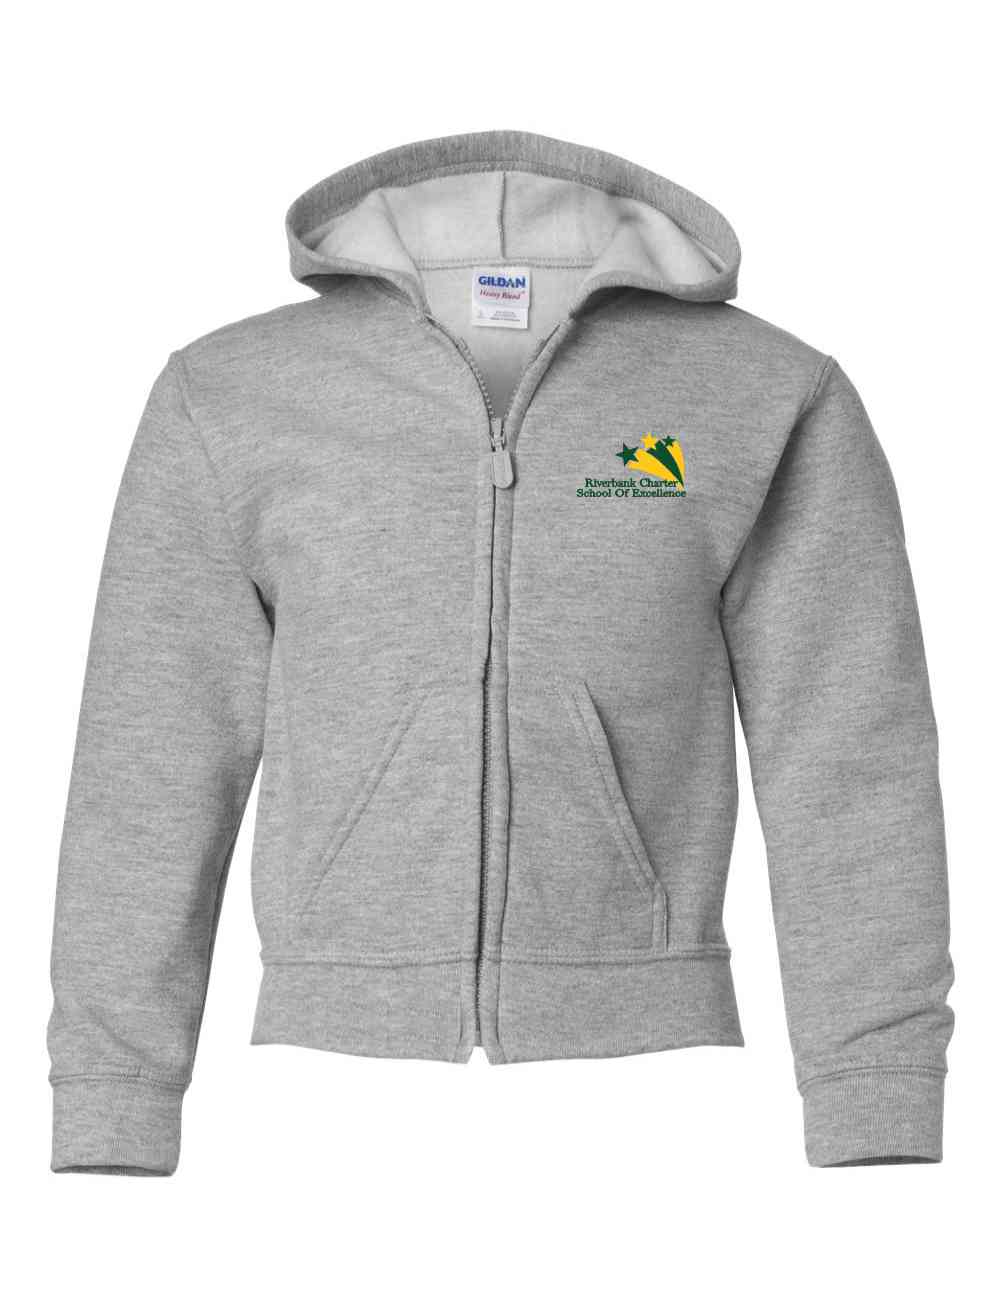 18600b Embroidered Gildan Youth  zip hooded sweatshirt